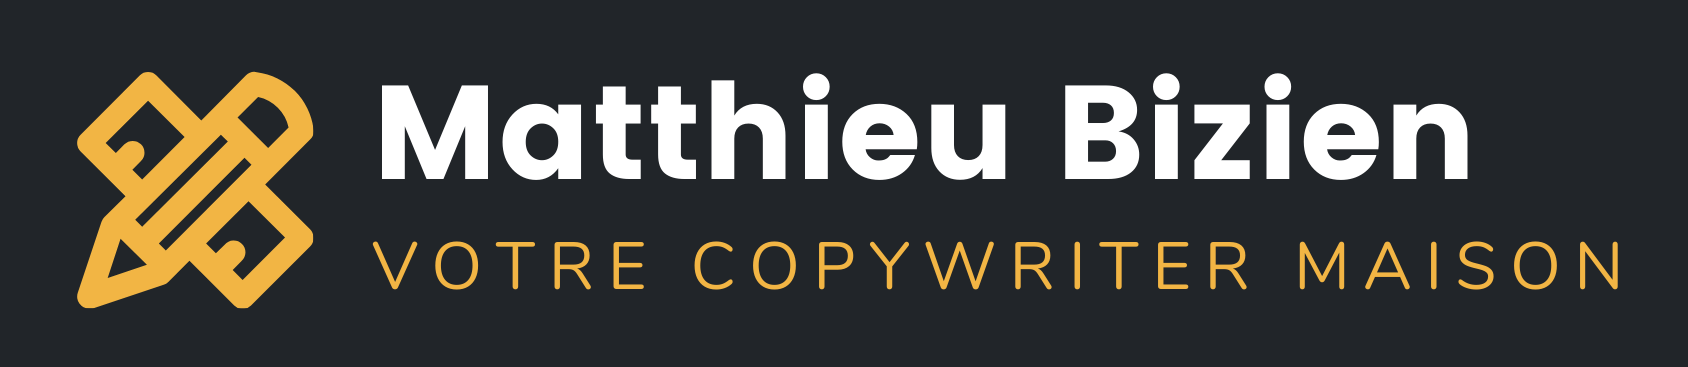 Copywriter | Rédacteur web SEO | Matthieu Bizien